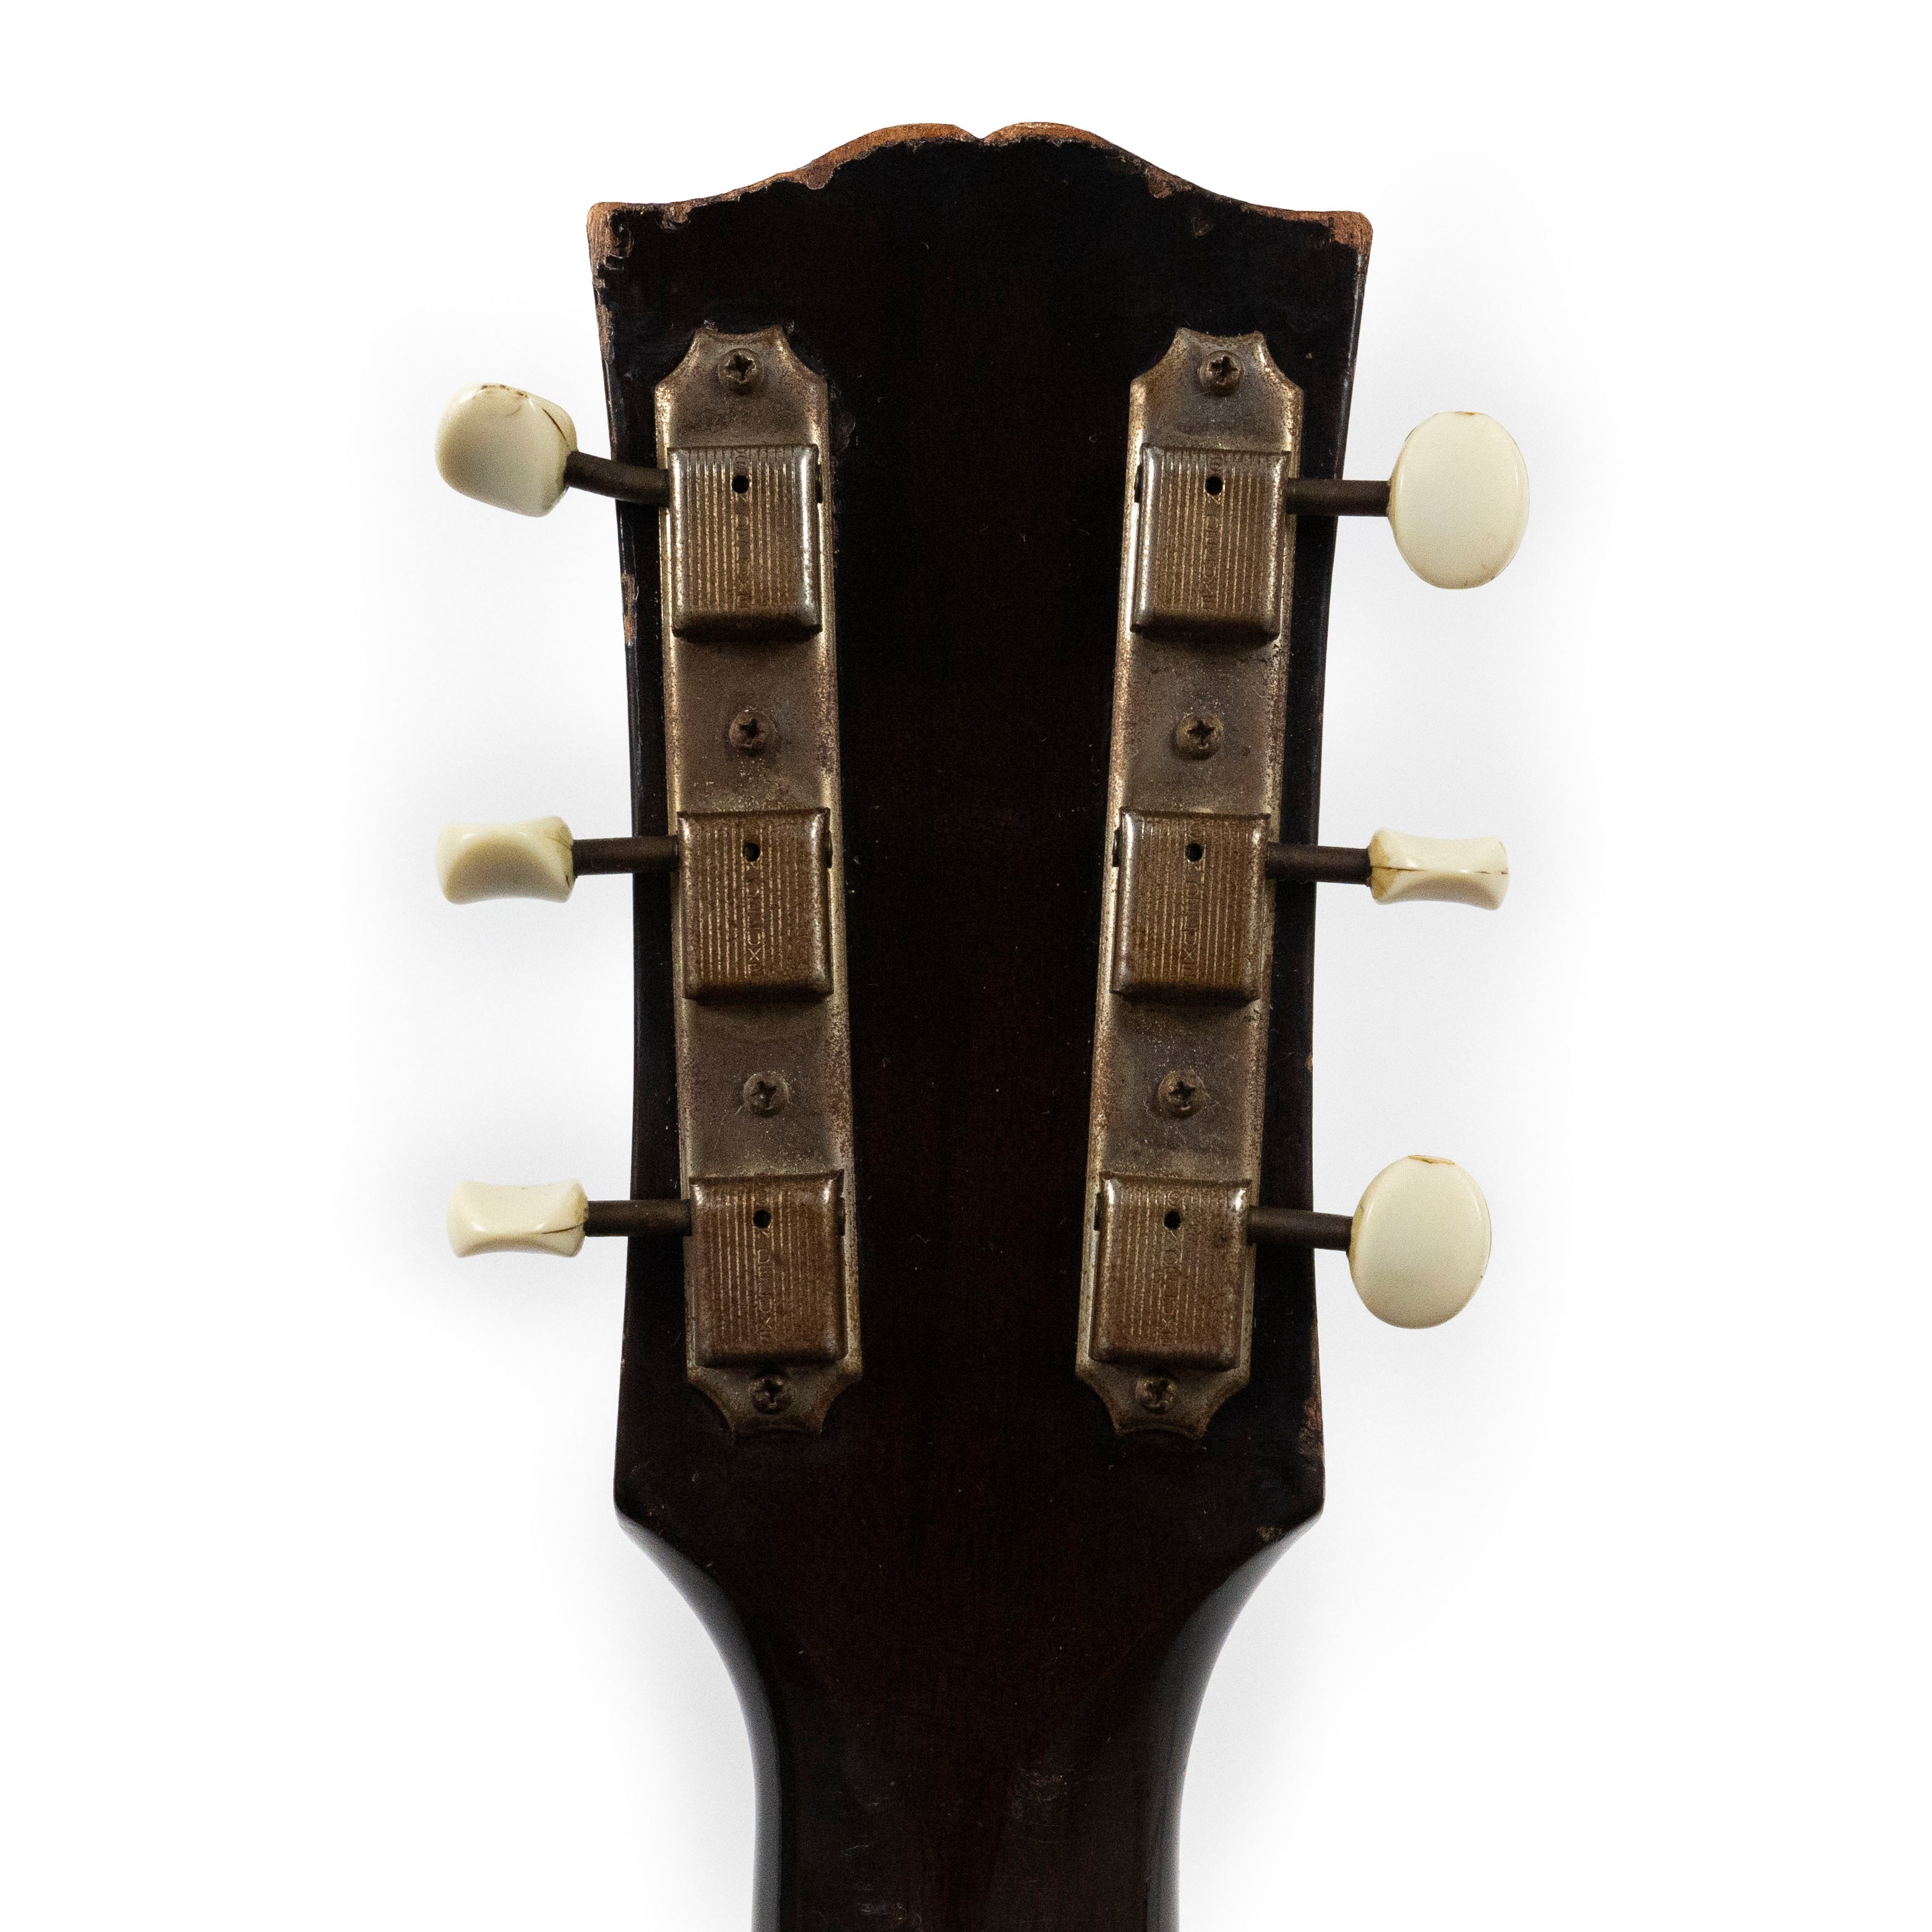 Gibson 1959 ES-125